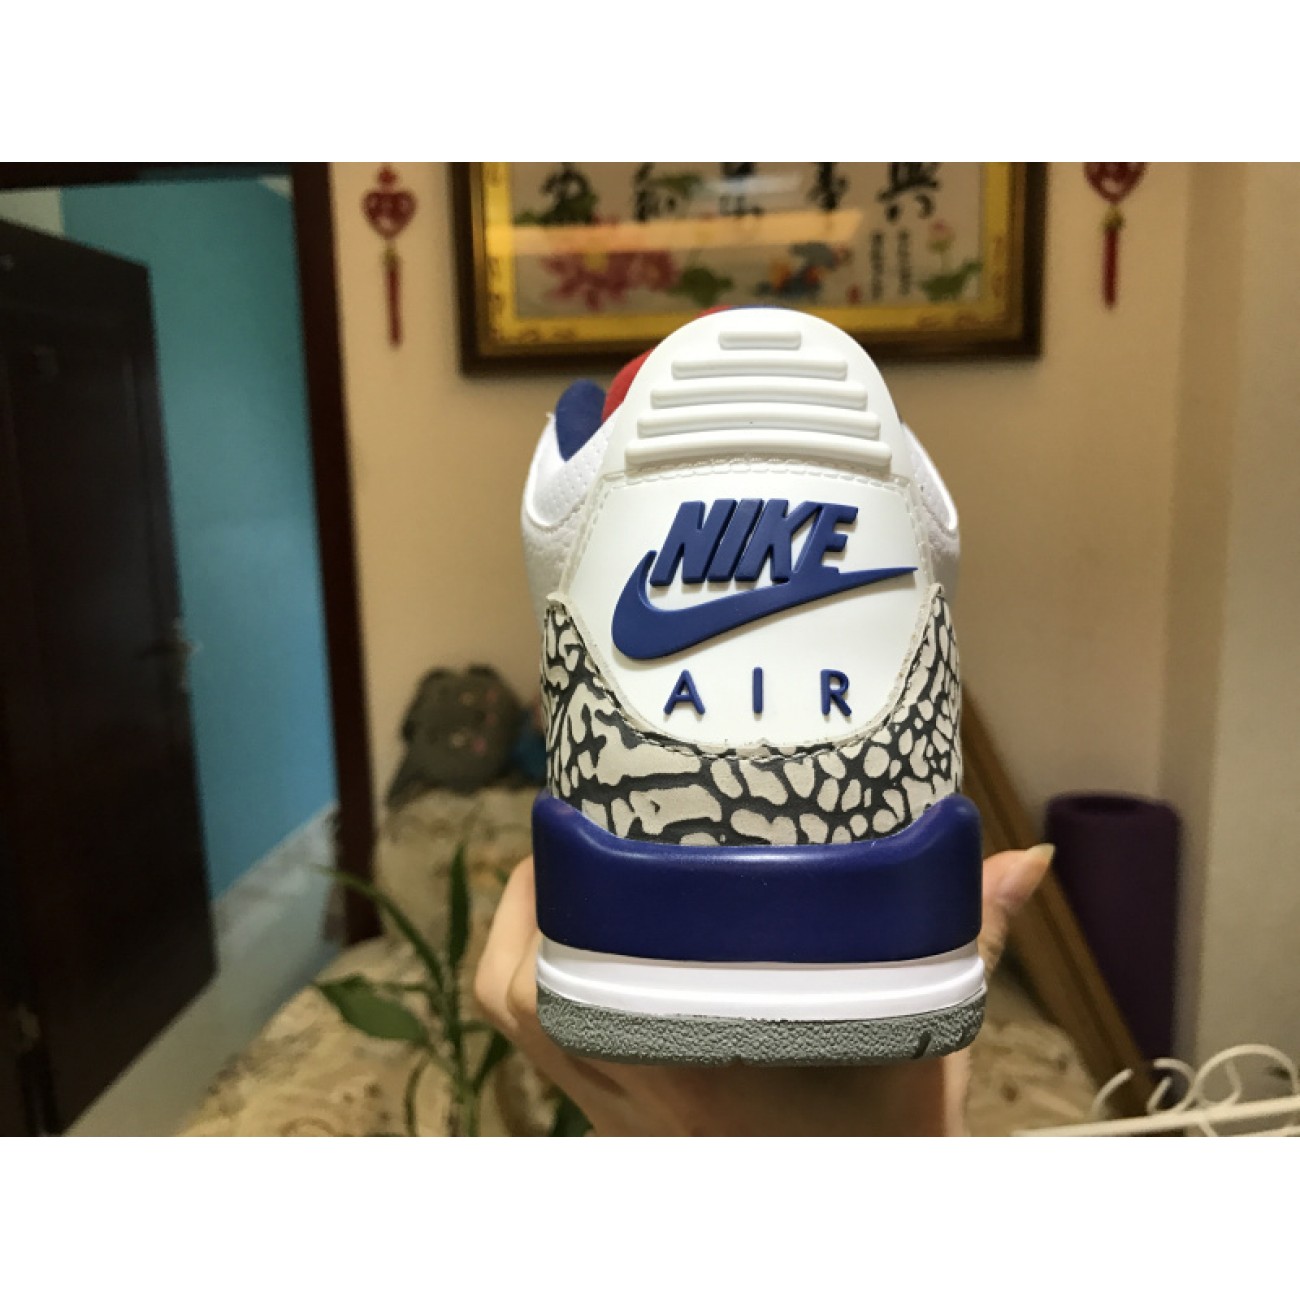 Air Jordan 3 OG "True Blue" 854262-106